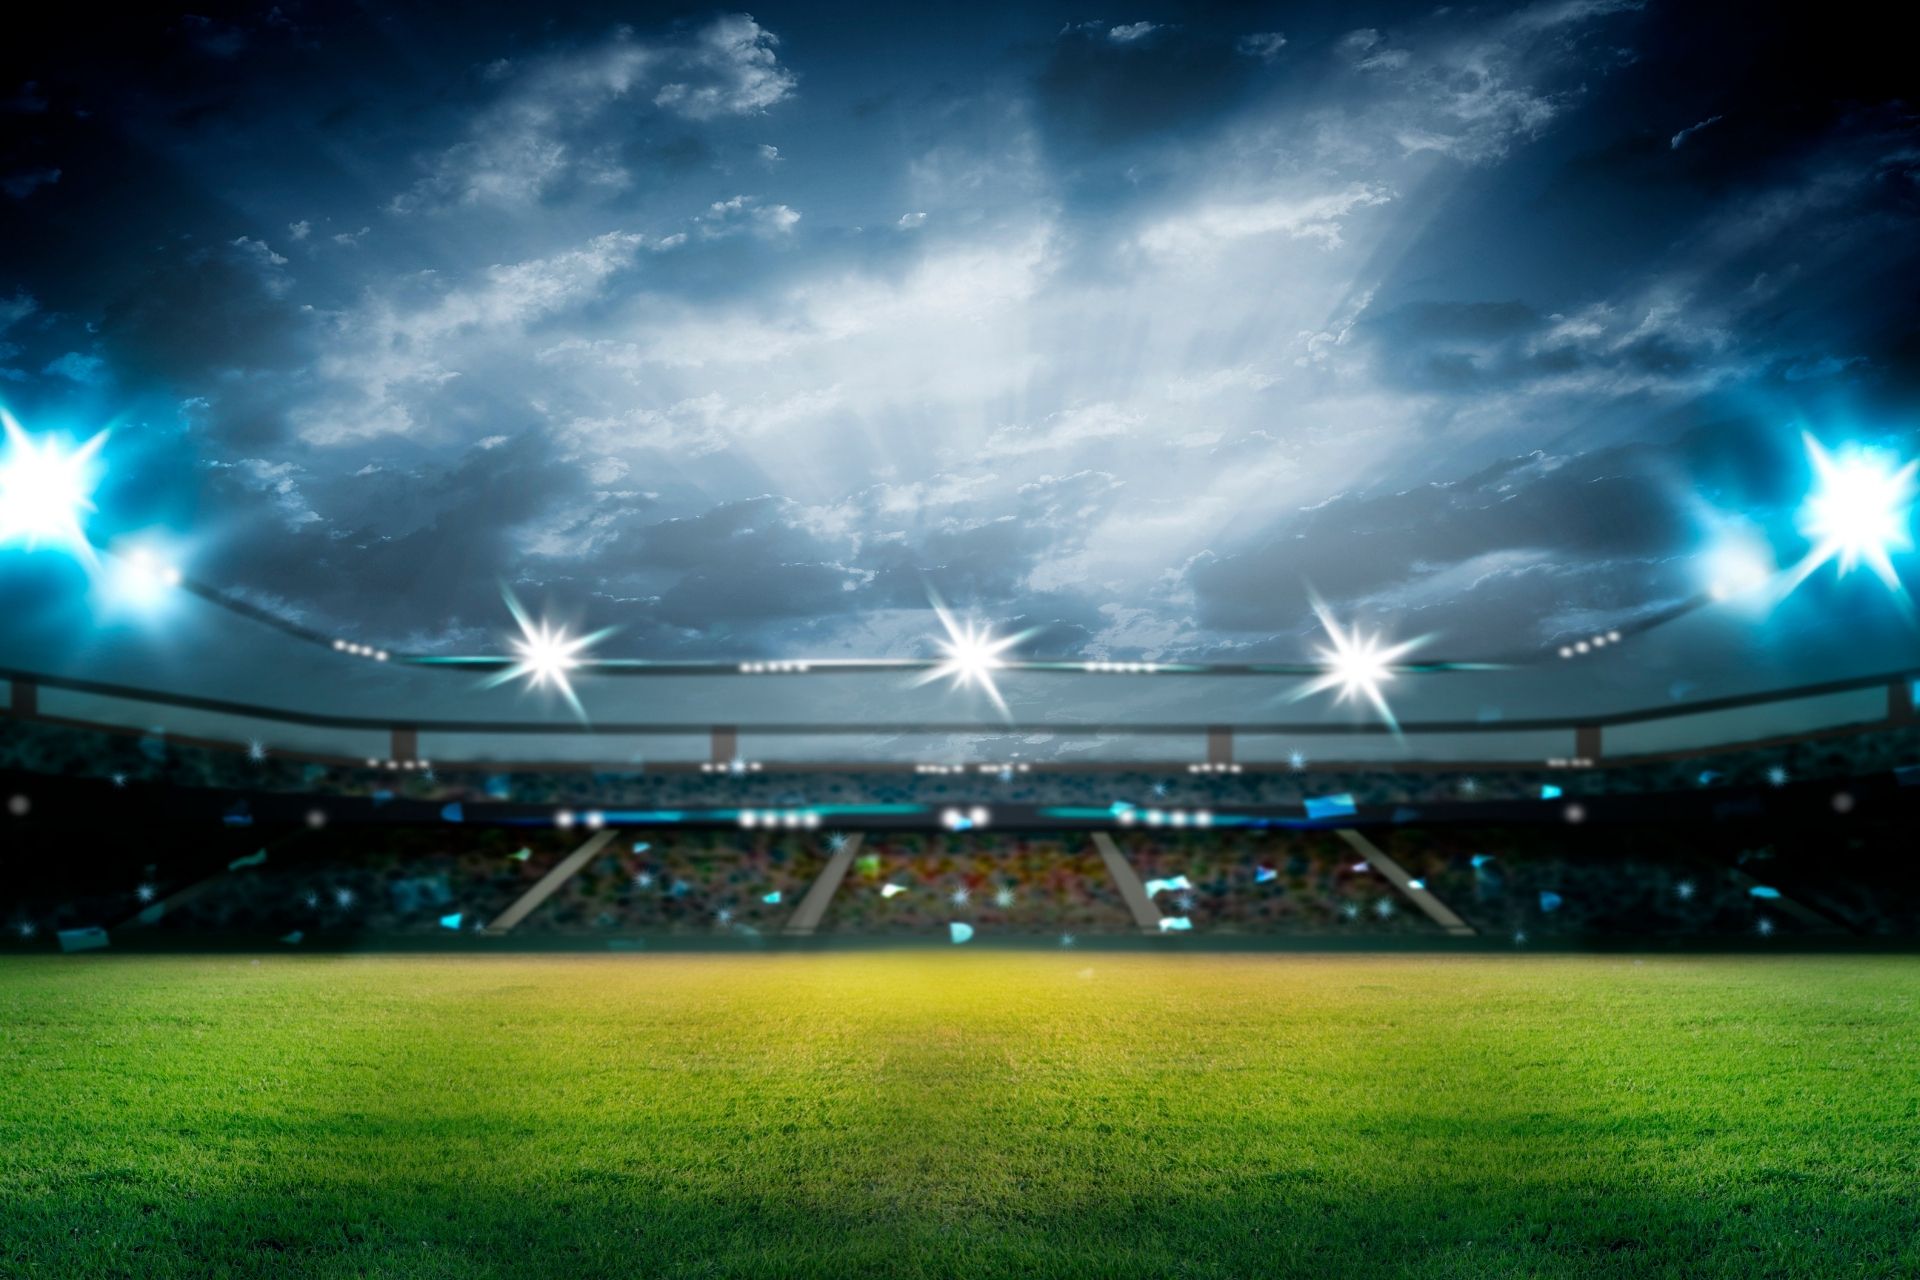 Dnia 2022-11-10 19:00 na stadionie Stadion Feijenoord odbyło się spotkanie między Feyenoord i Cambuur zakończone wynikiem 1-0